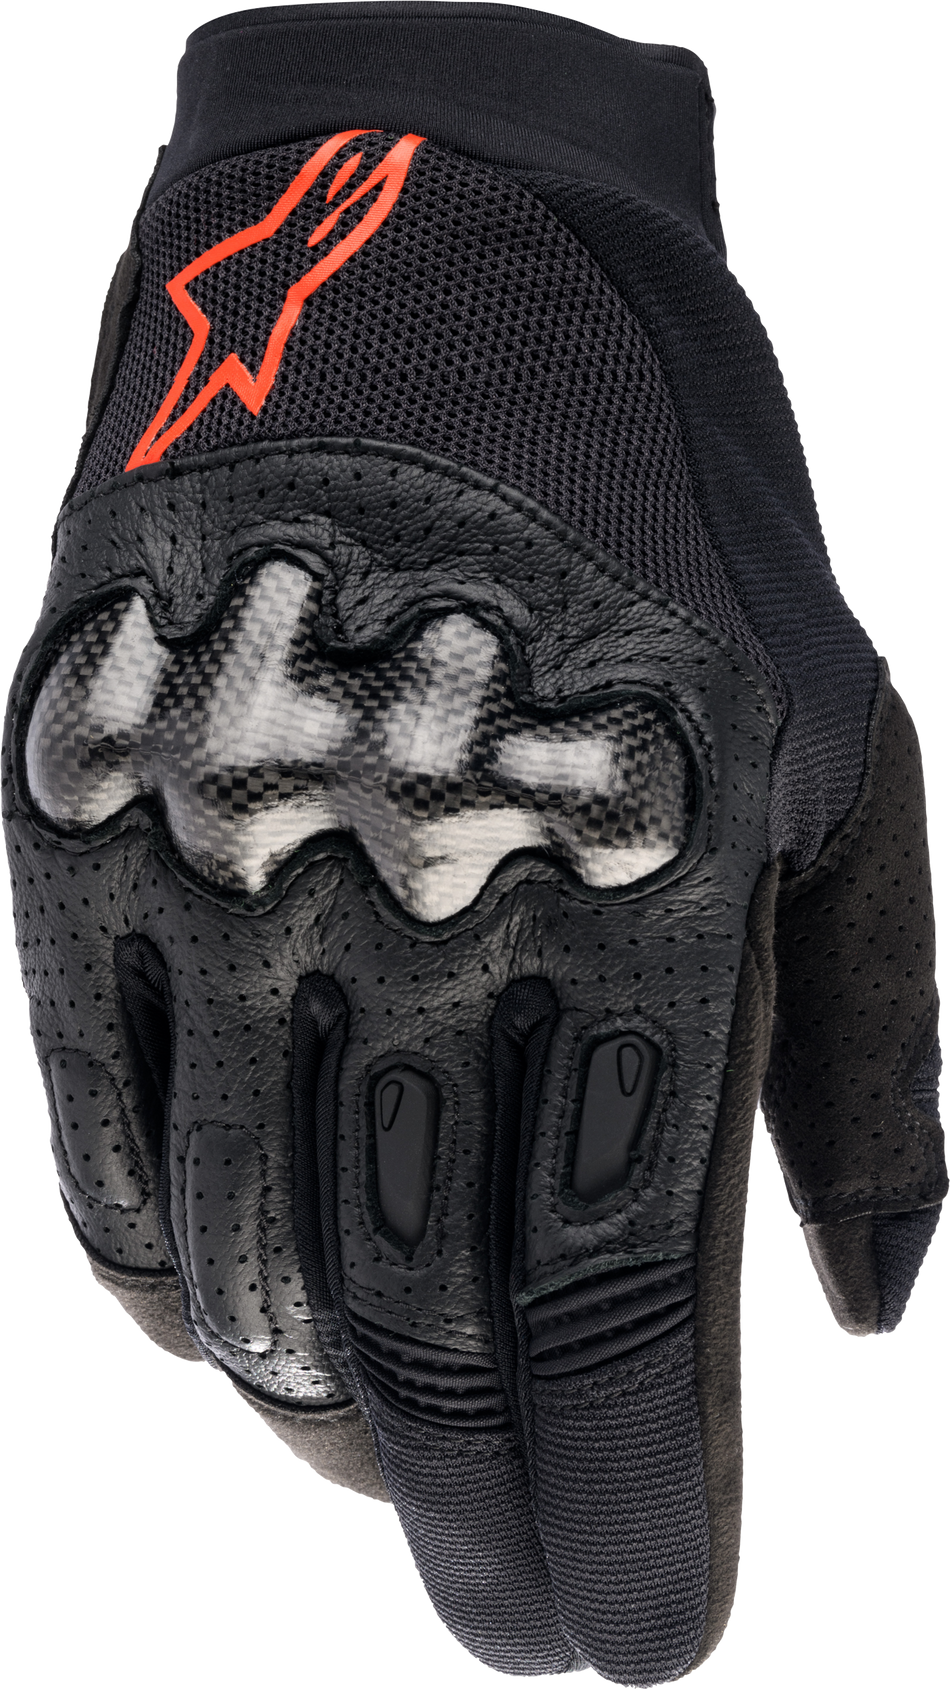 ALPINESTARS Megawatt Gloves Black/Red Fluo Md 3565023-1030-MD